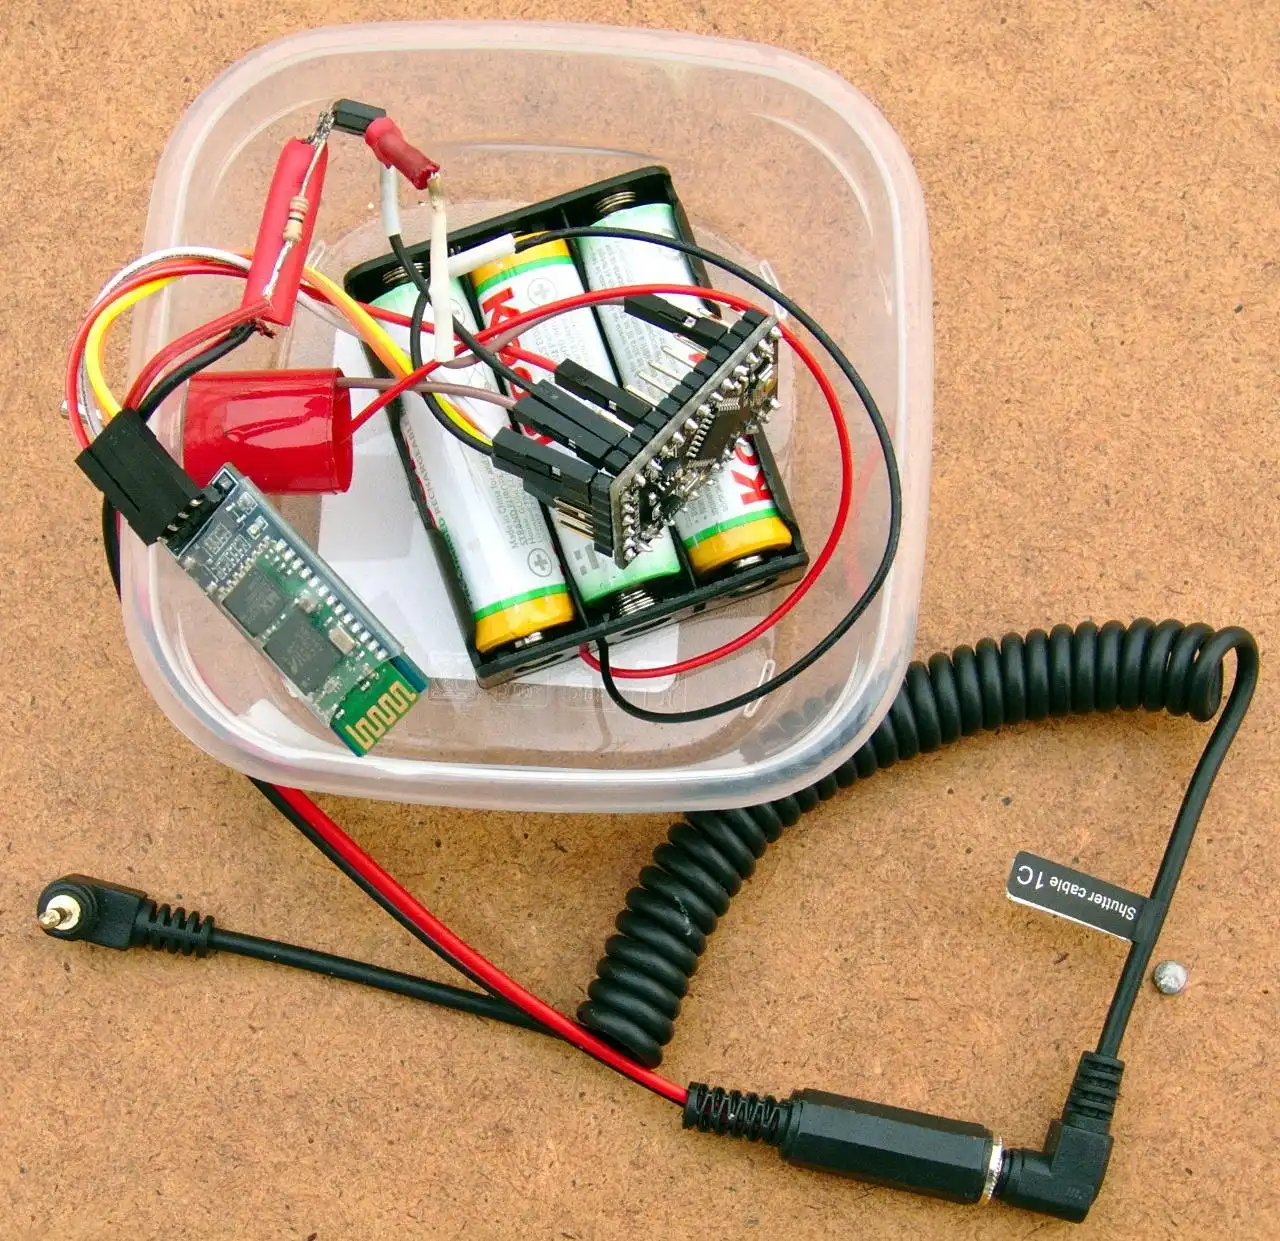 വെബ് ടൂൾ അല്ലെങ്കിൽ വെബ് ആപ്പ് Arduino DSLR റിമോട്ട് കൺട്രോളർ ഡൗൺലോഡ് ചെയ്യുക